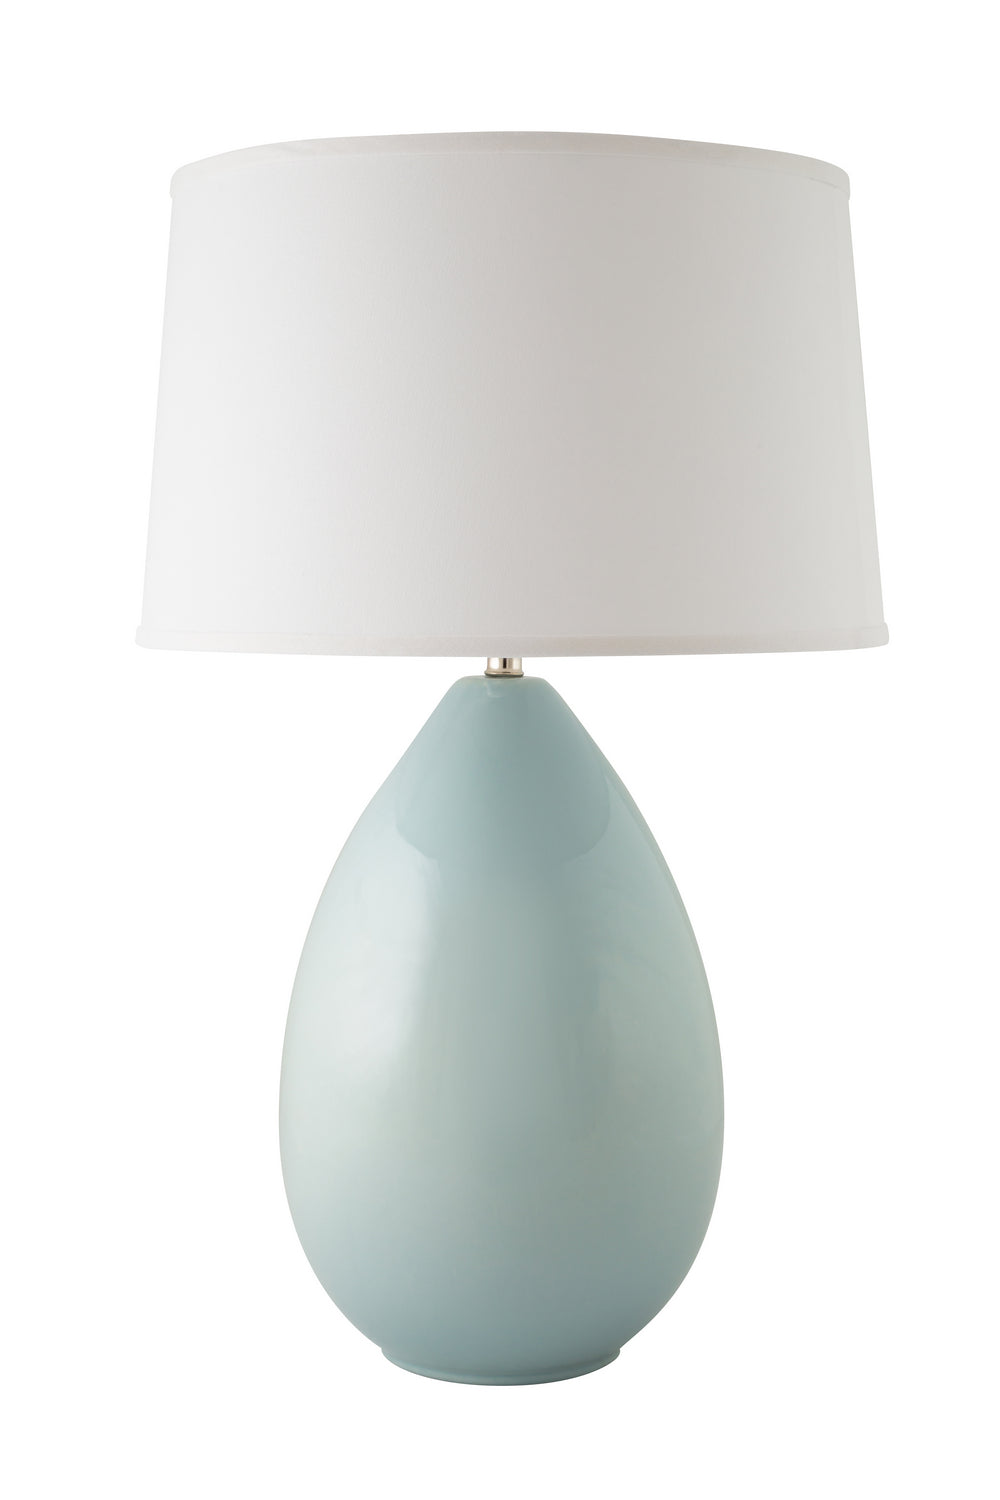 River Ceramic Lighting 202-20 Egg One Light Table Lamp Lamp Bronze / Dark